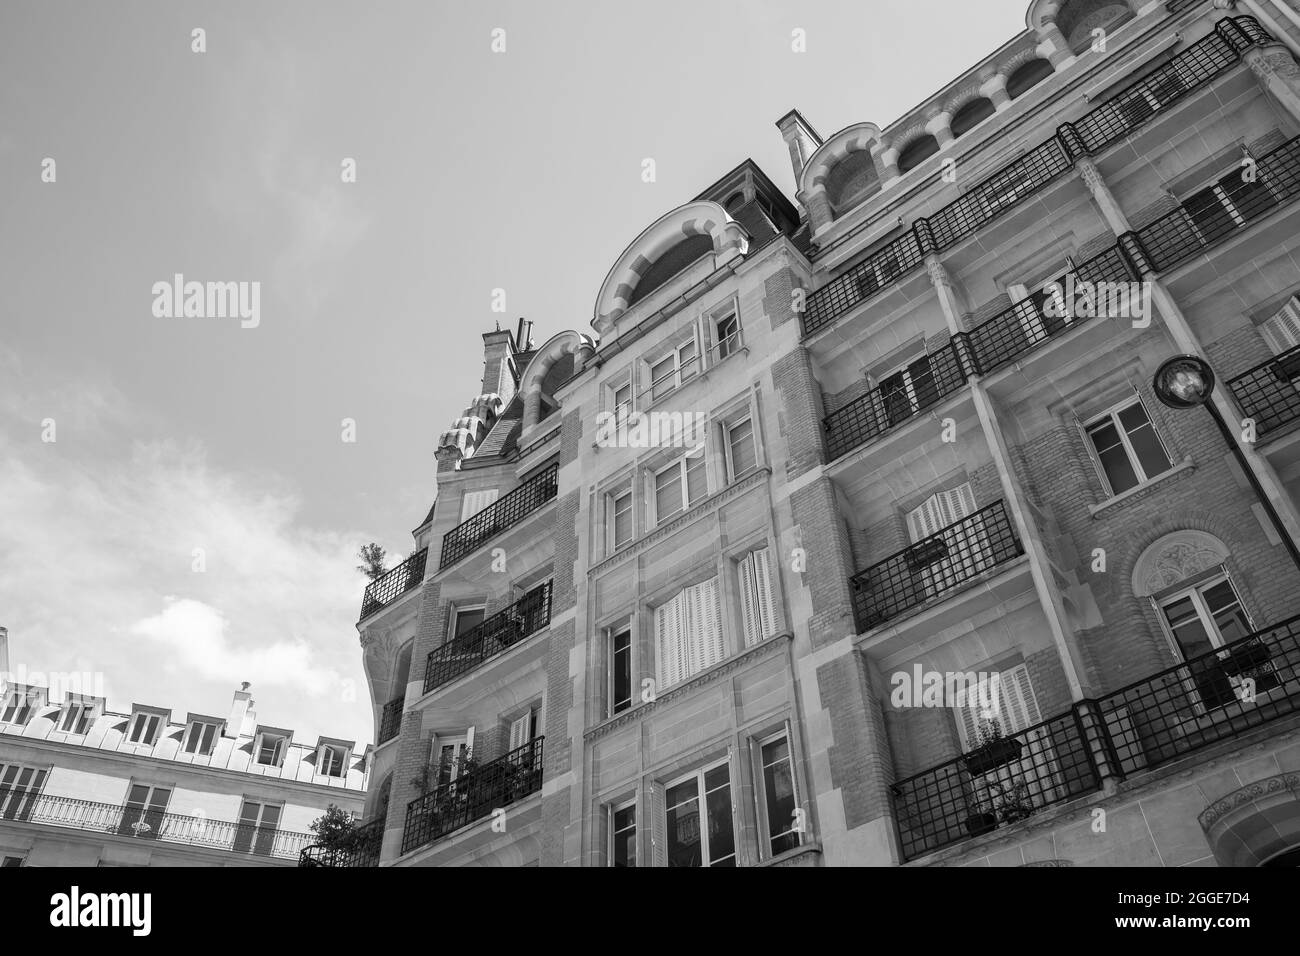 Exterior Facade Of A Parisian Building At 6 Rue Villaret de Joyeuse in Paris Stock Photo